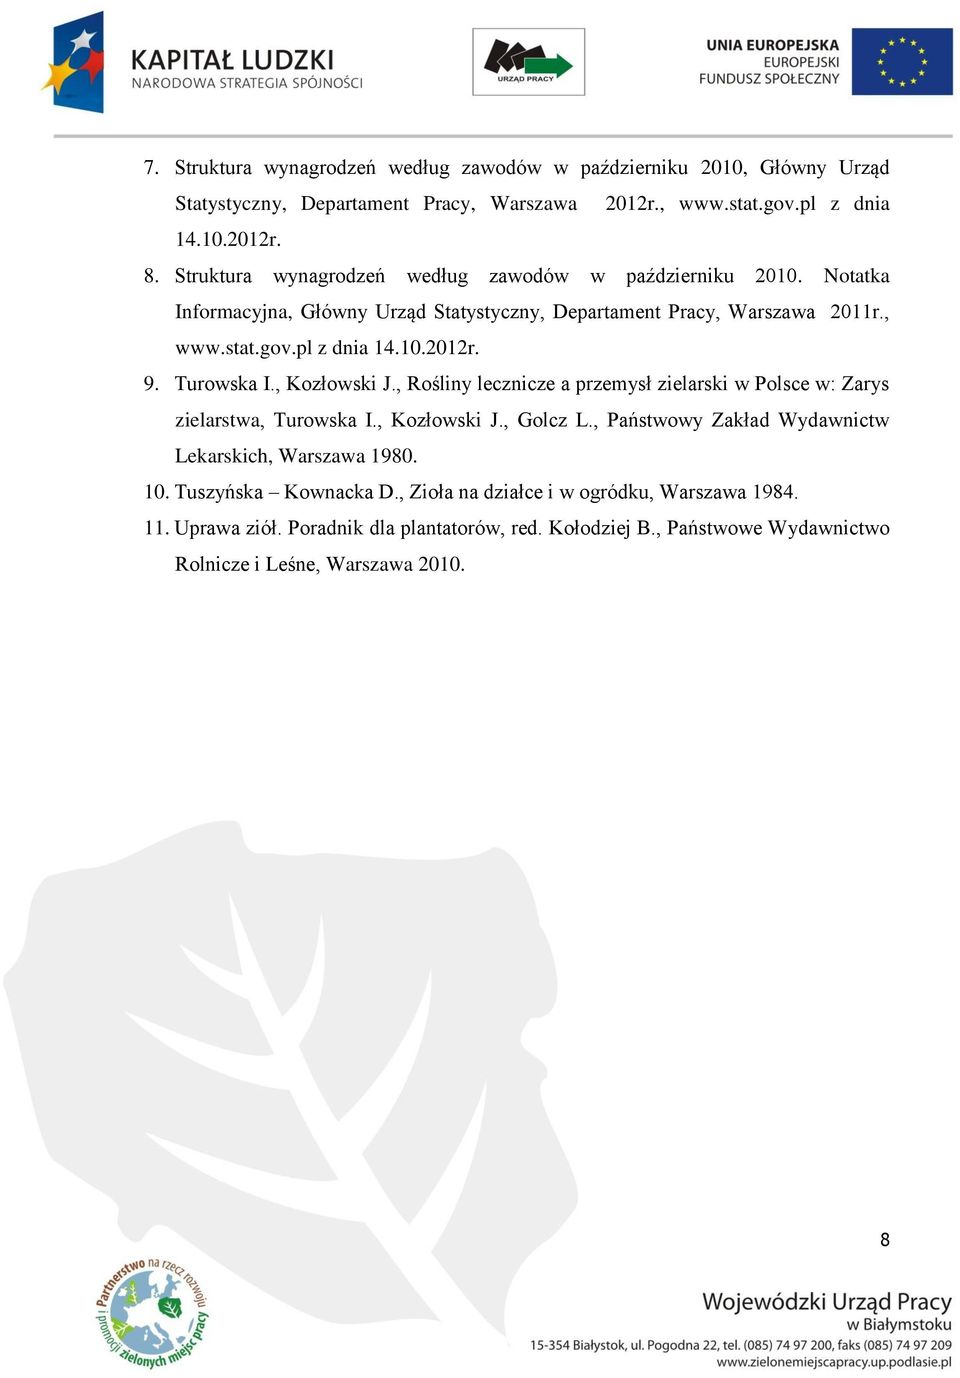 Turowska I., Kozłowski J., Rośliny lecznicze a przemysł zielarski w Polsce w: Zarys zielarstwa, Turowska I., Kozłowski J., Golcz L.